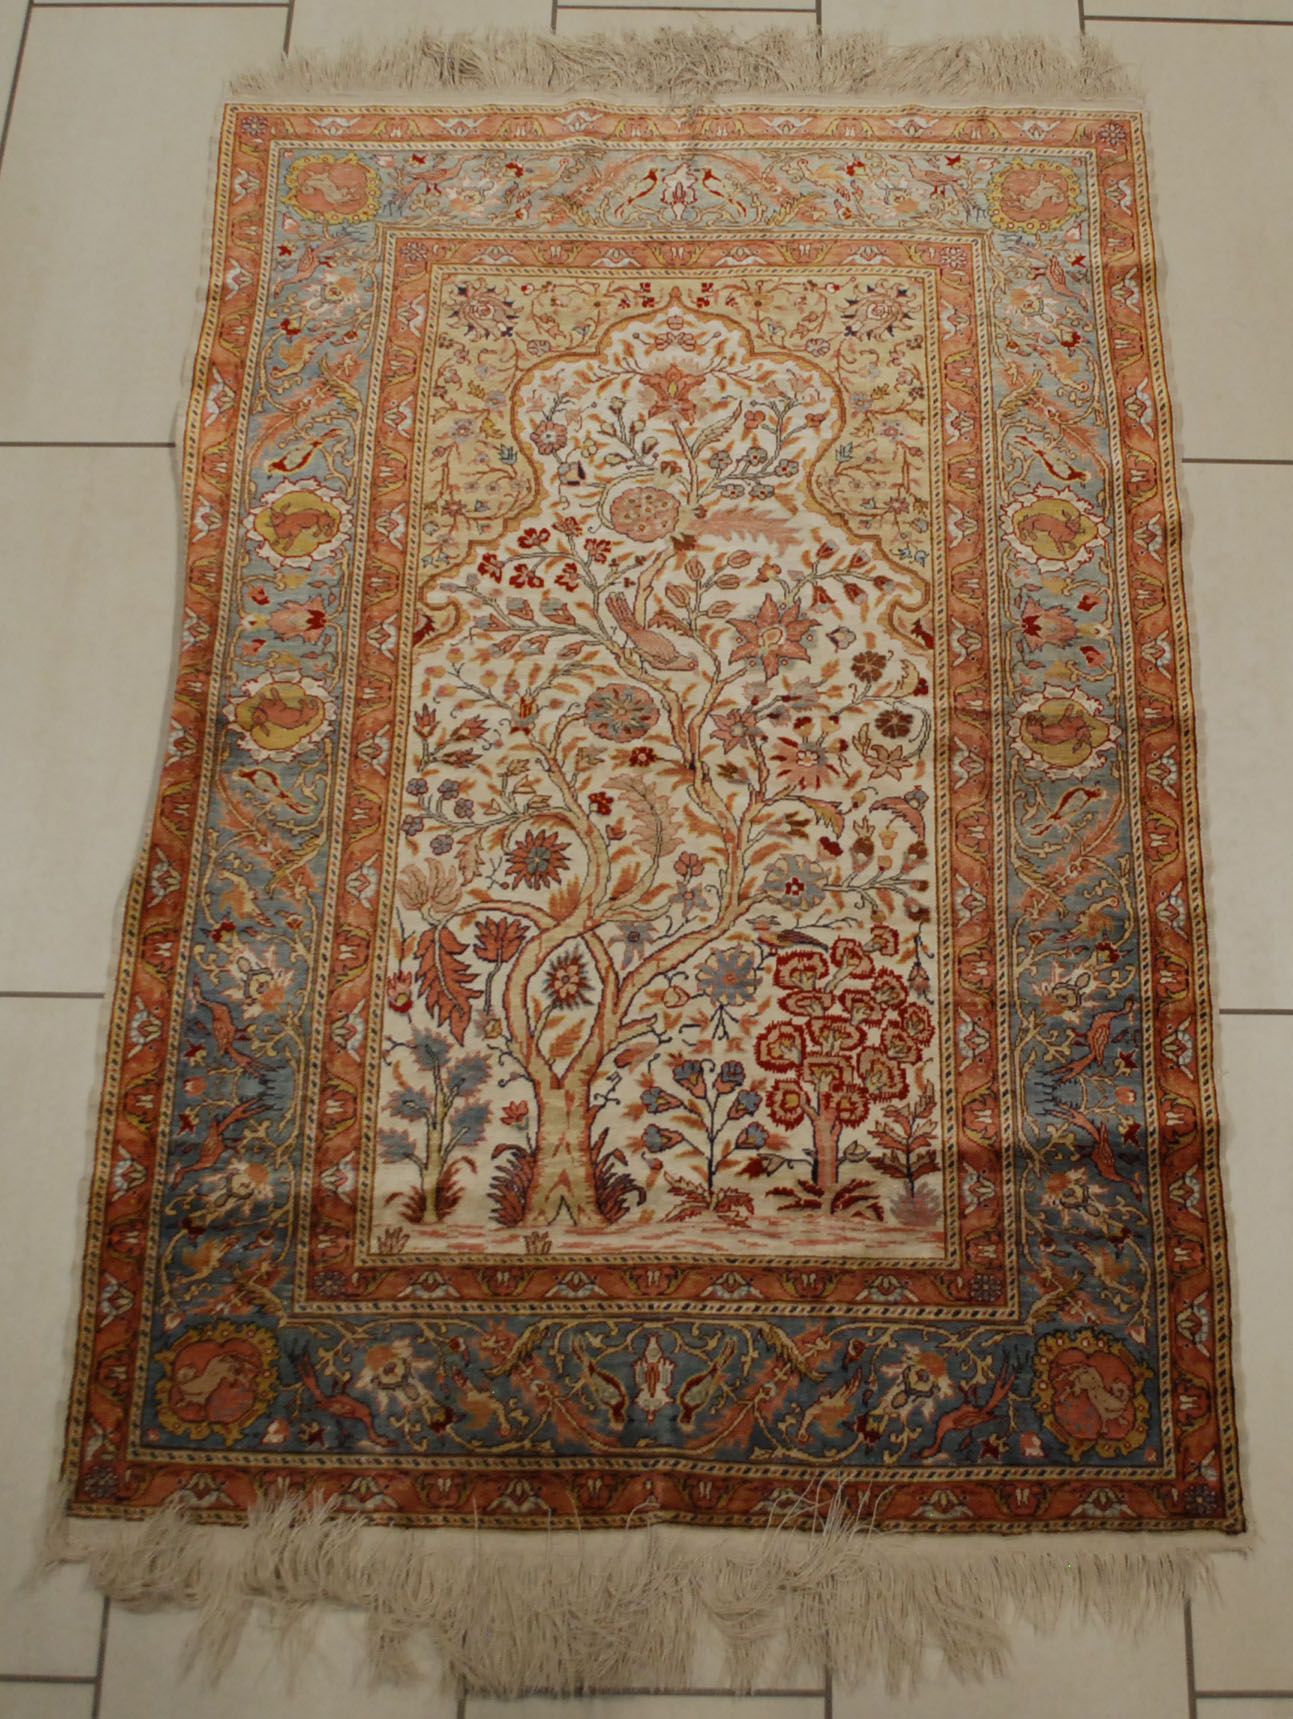 Tapis Goum en soie. Au motif d'un arbre avec oiseau.

Dim.: 160 x 100 cm.